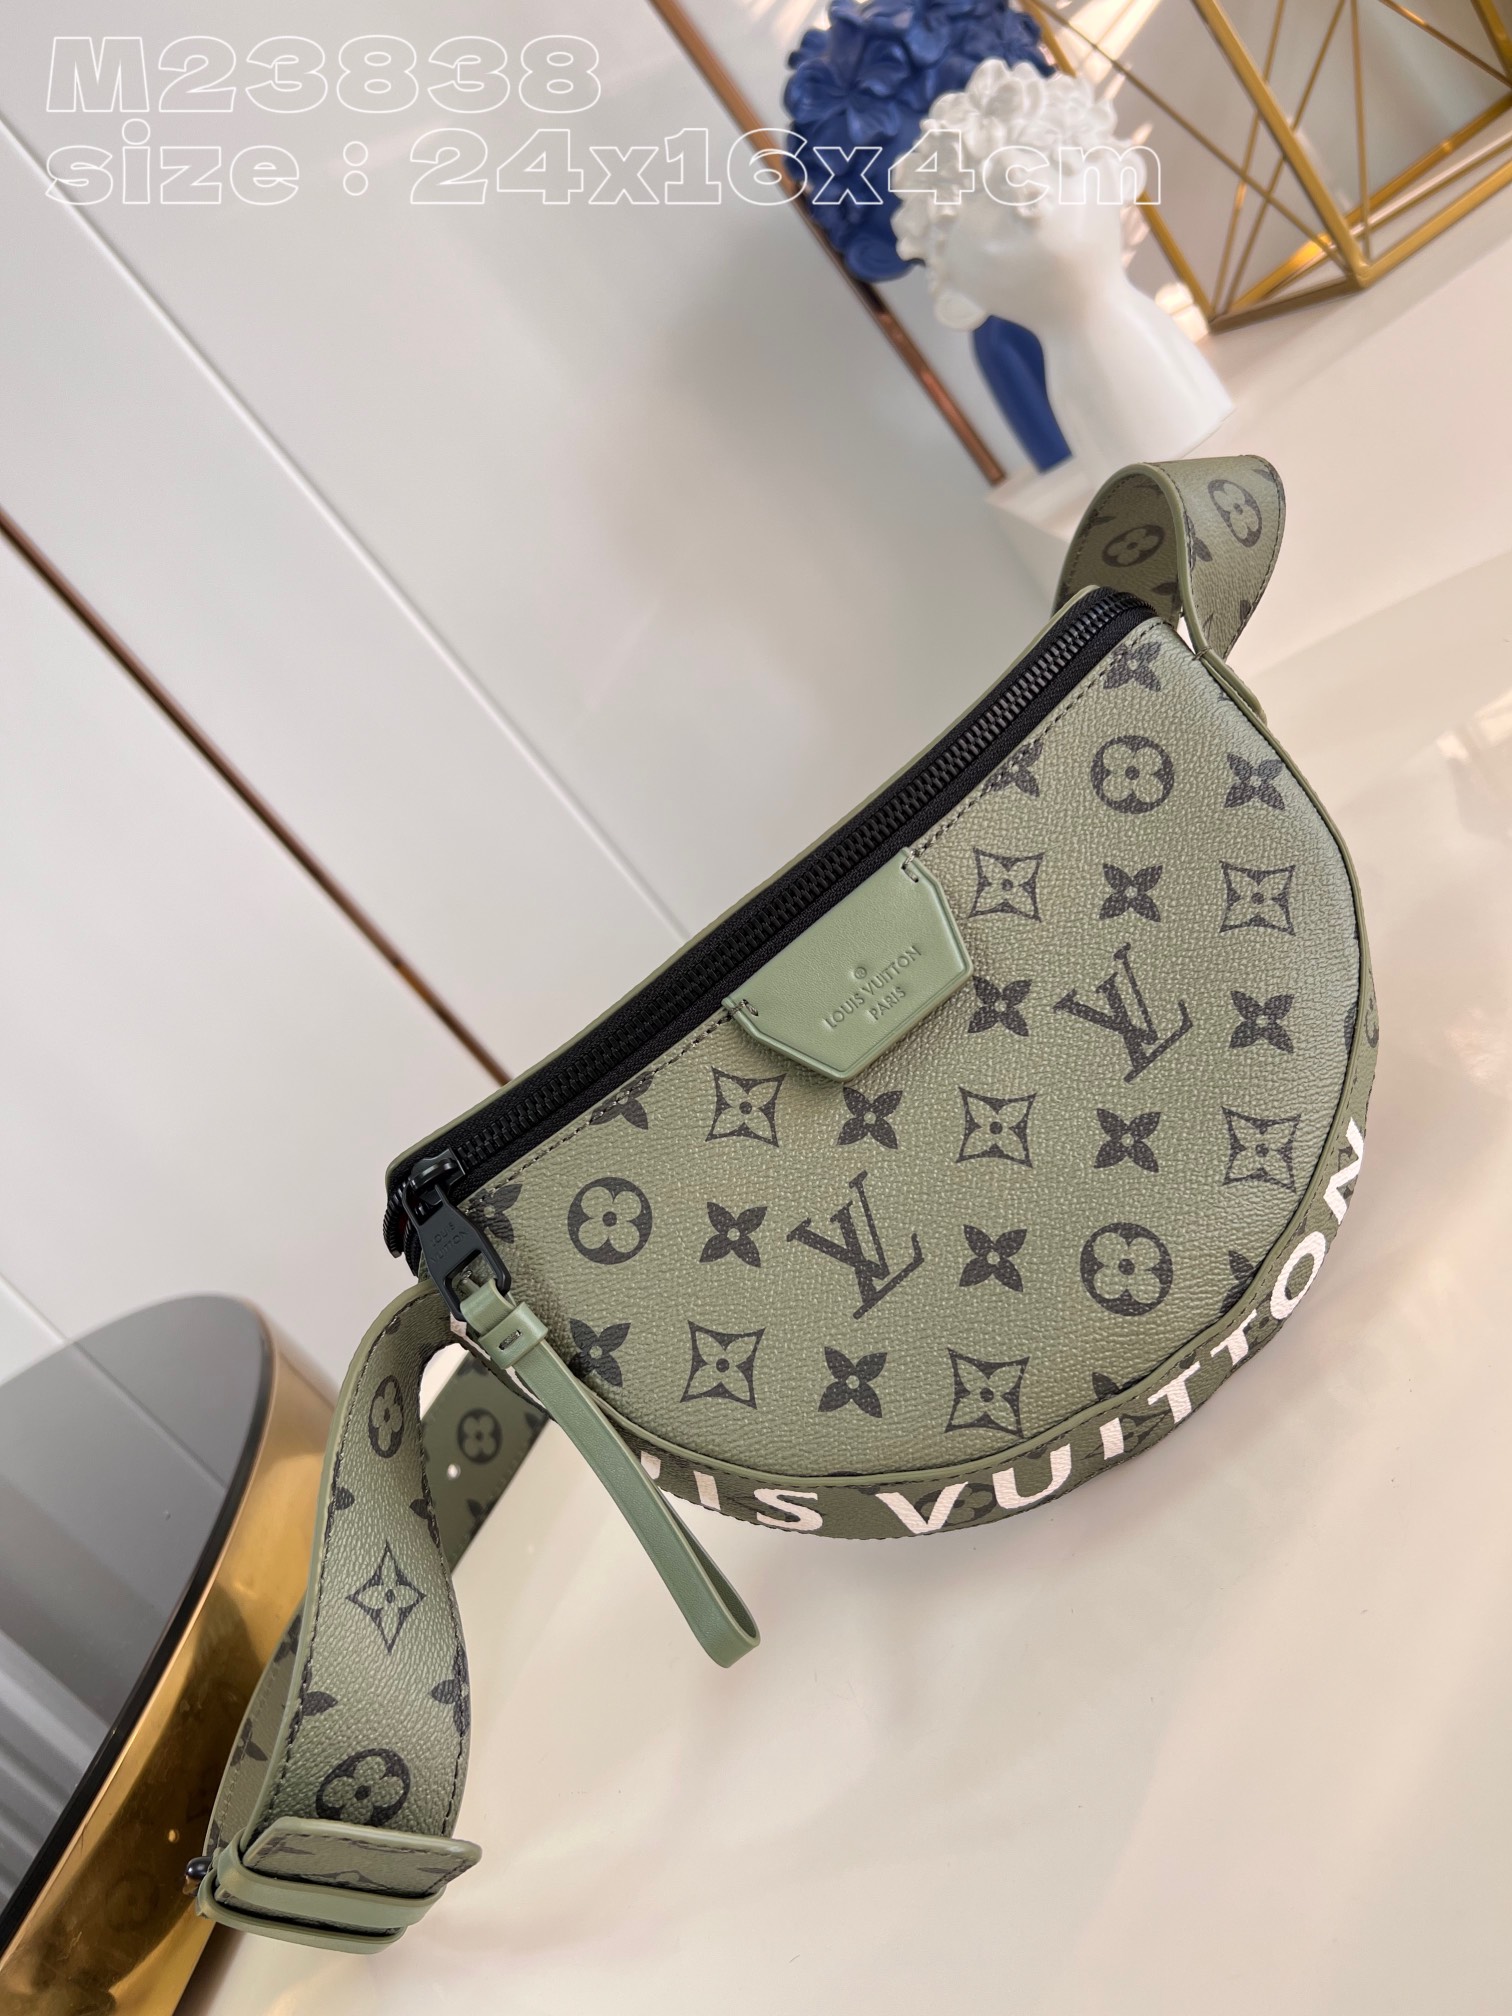 Top Grade Louis Vuitton Bags Handbags Canvas M23838